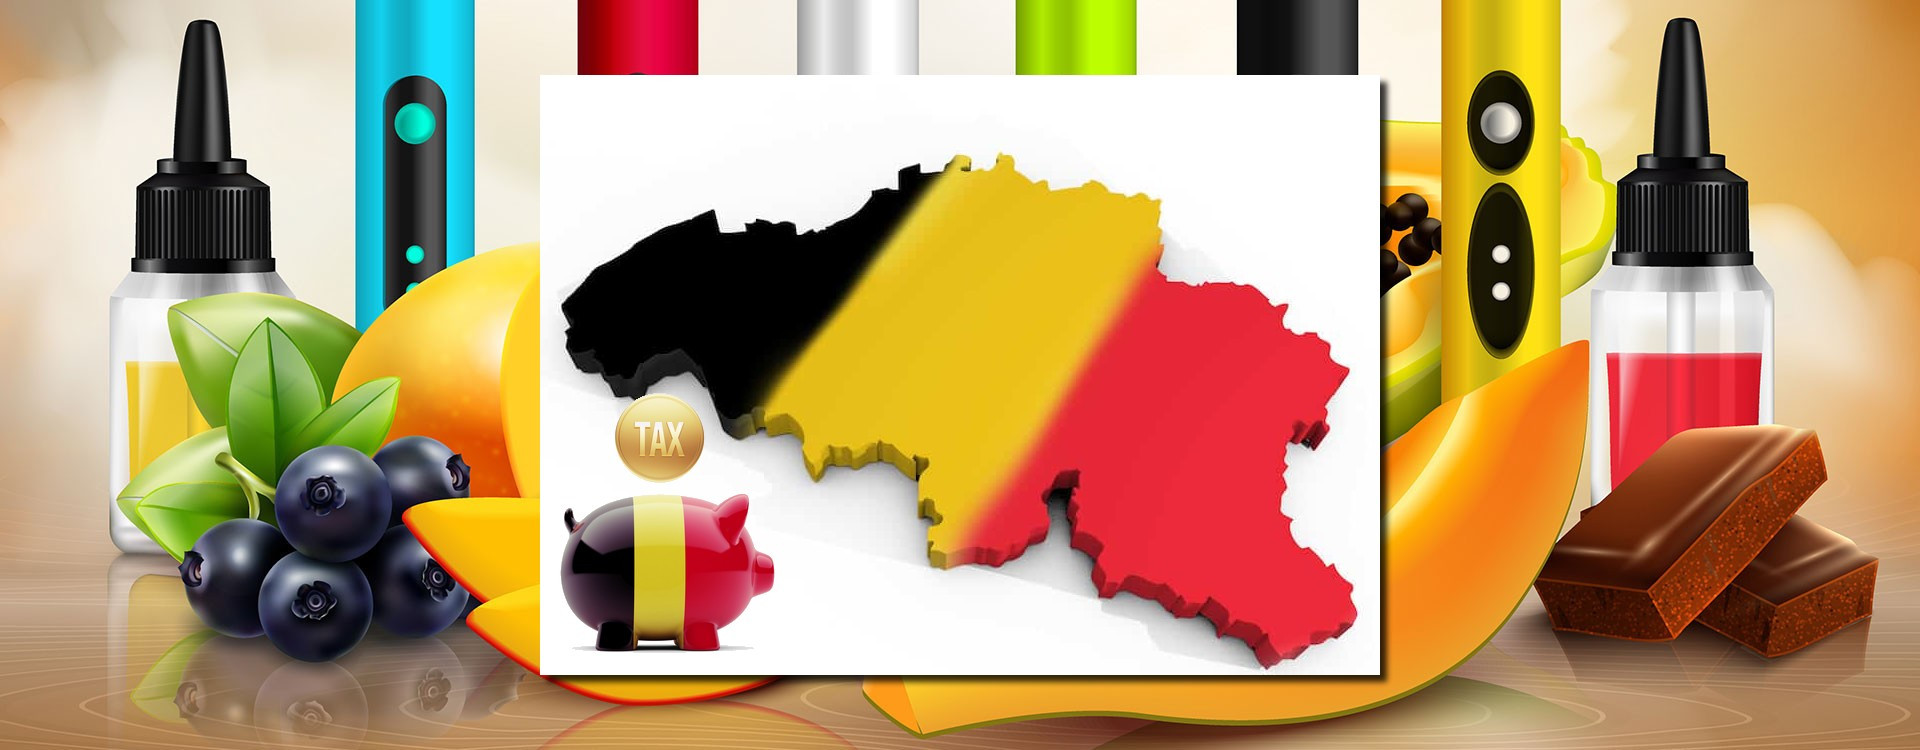 La Taxation des E-liquides en Belgique : Analyse Approfondie